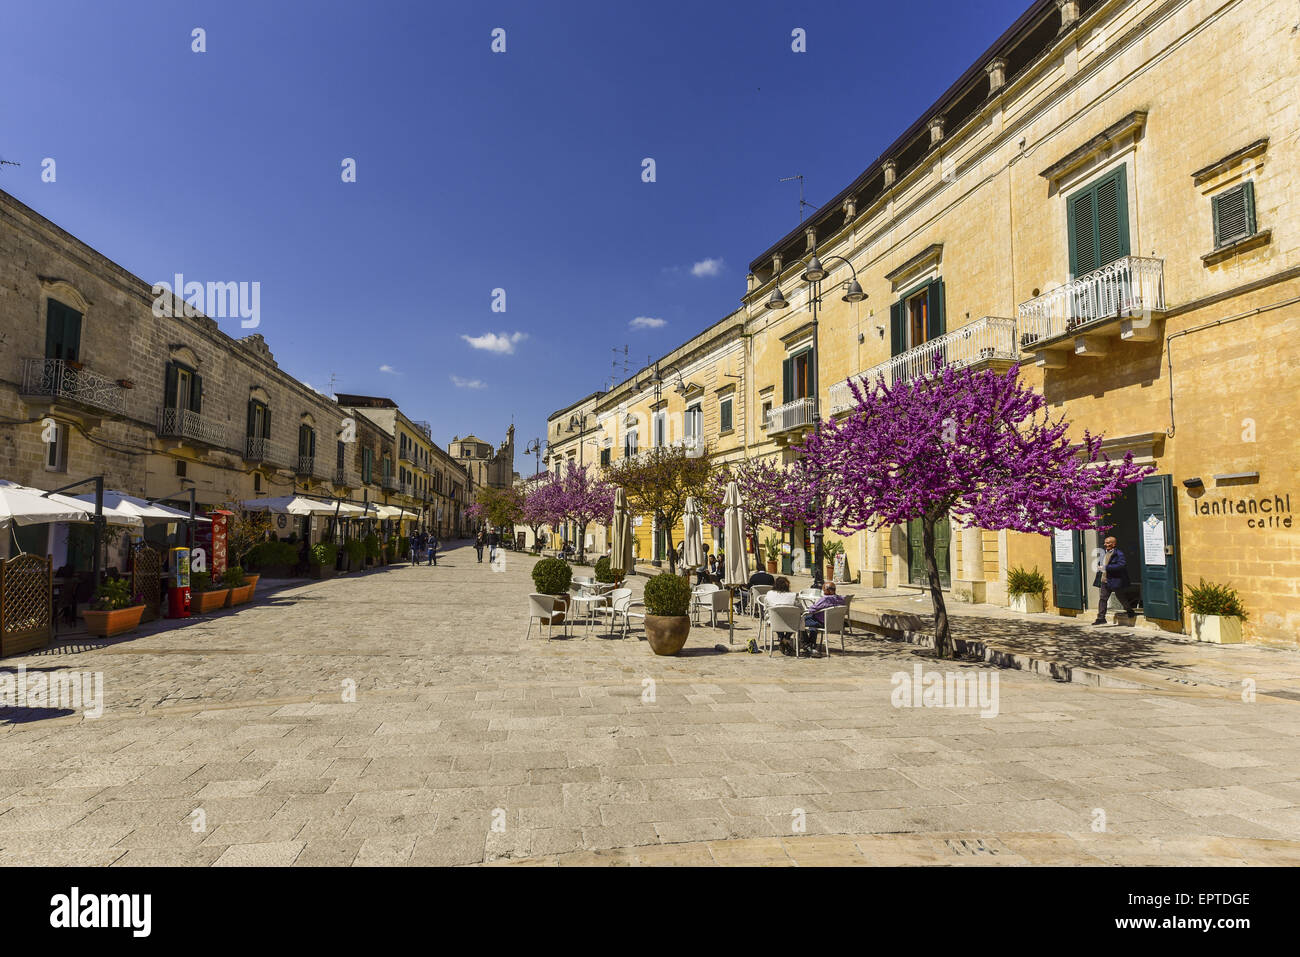 La capitale culturale europea del 2019, Matera, Basilicata, Italia Foto Stock